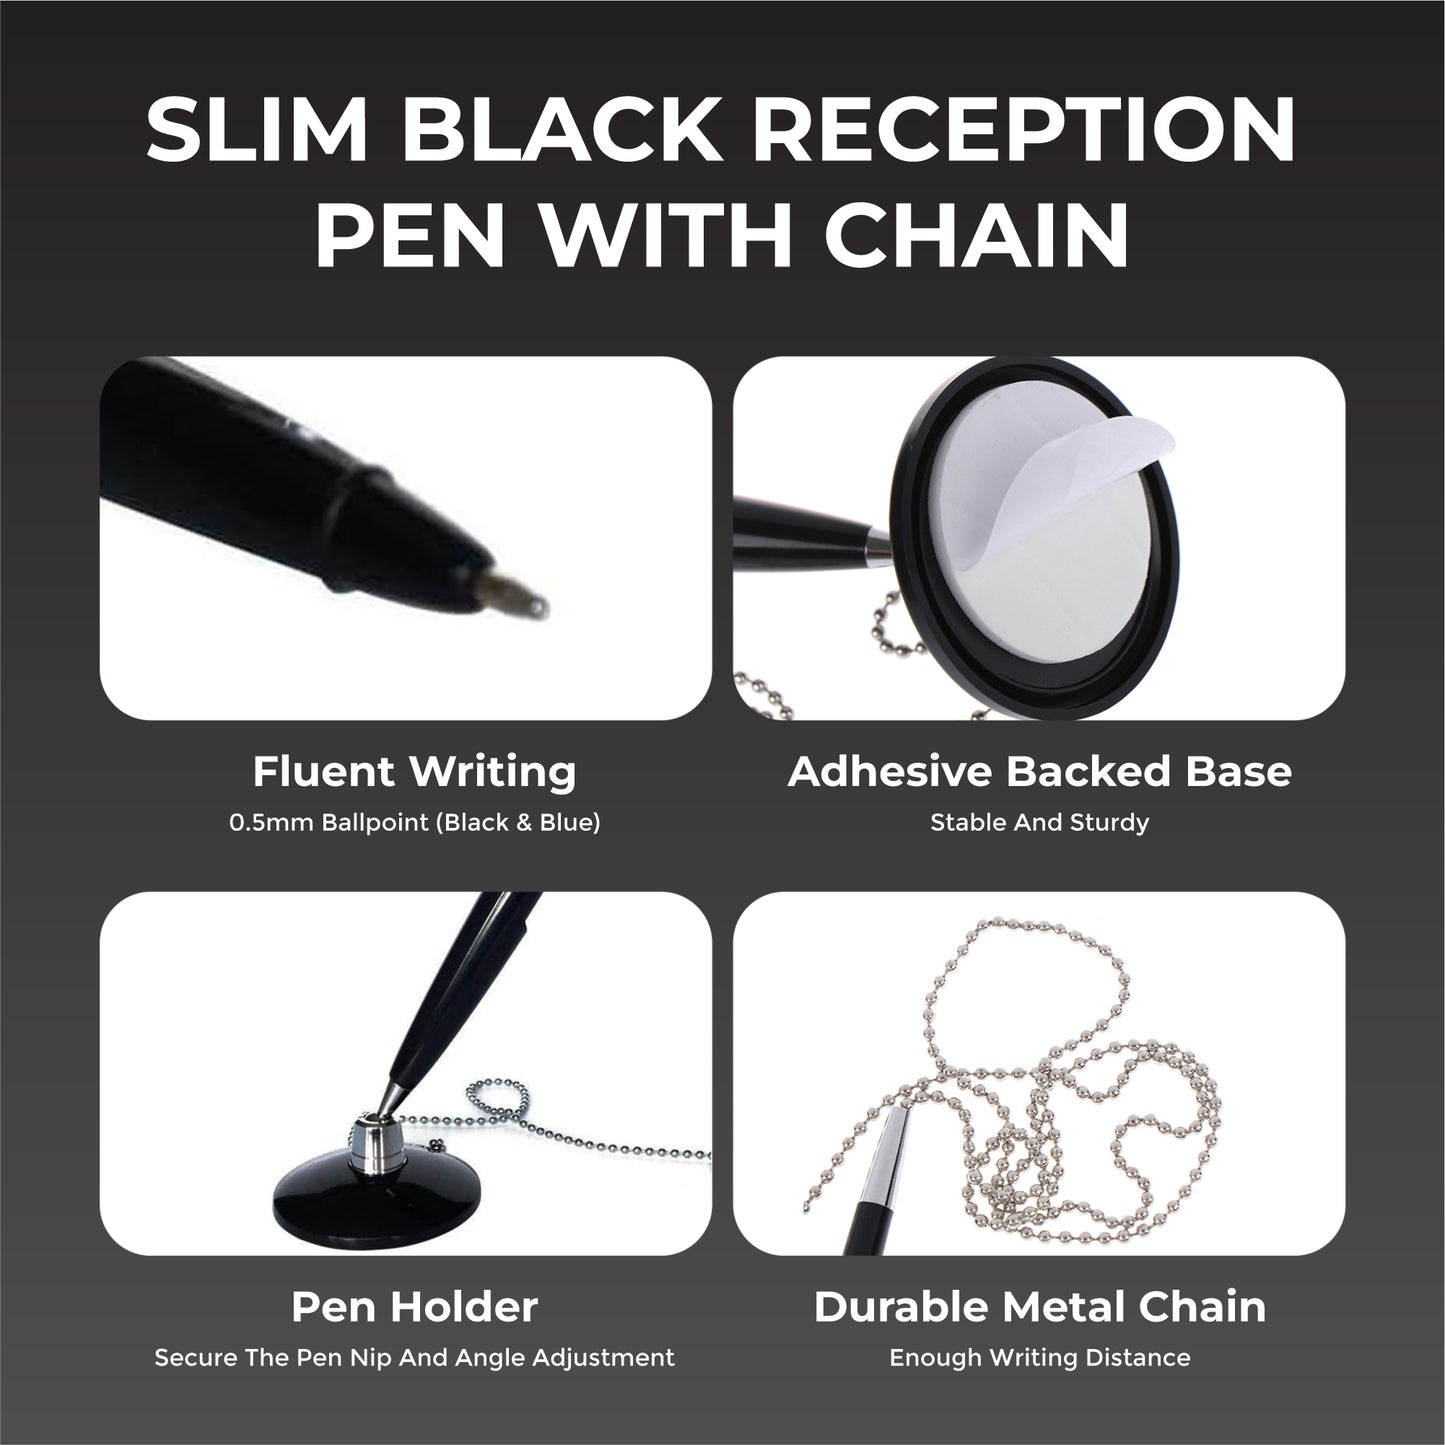 Slim Black Reception Counter Pen on Chain